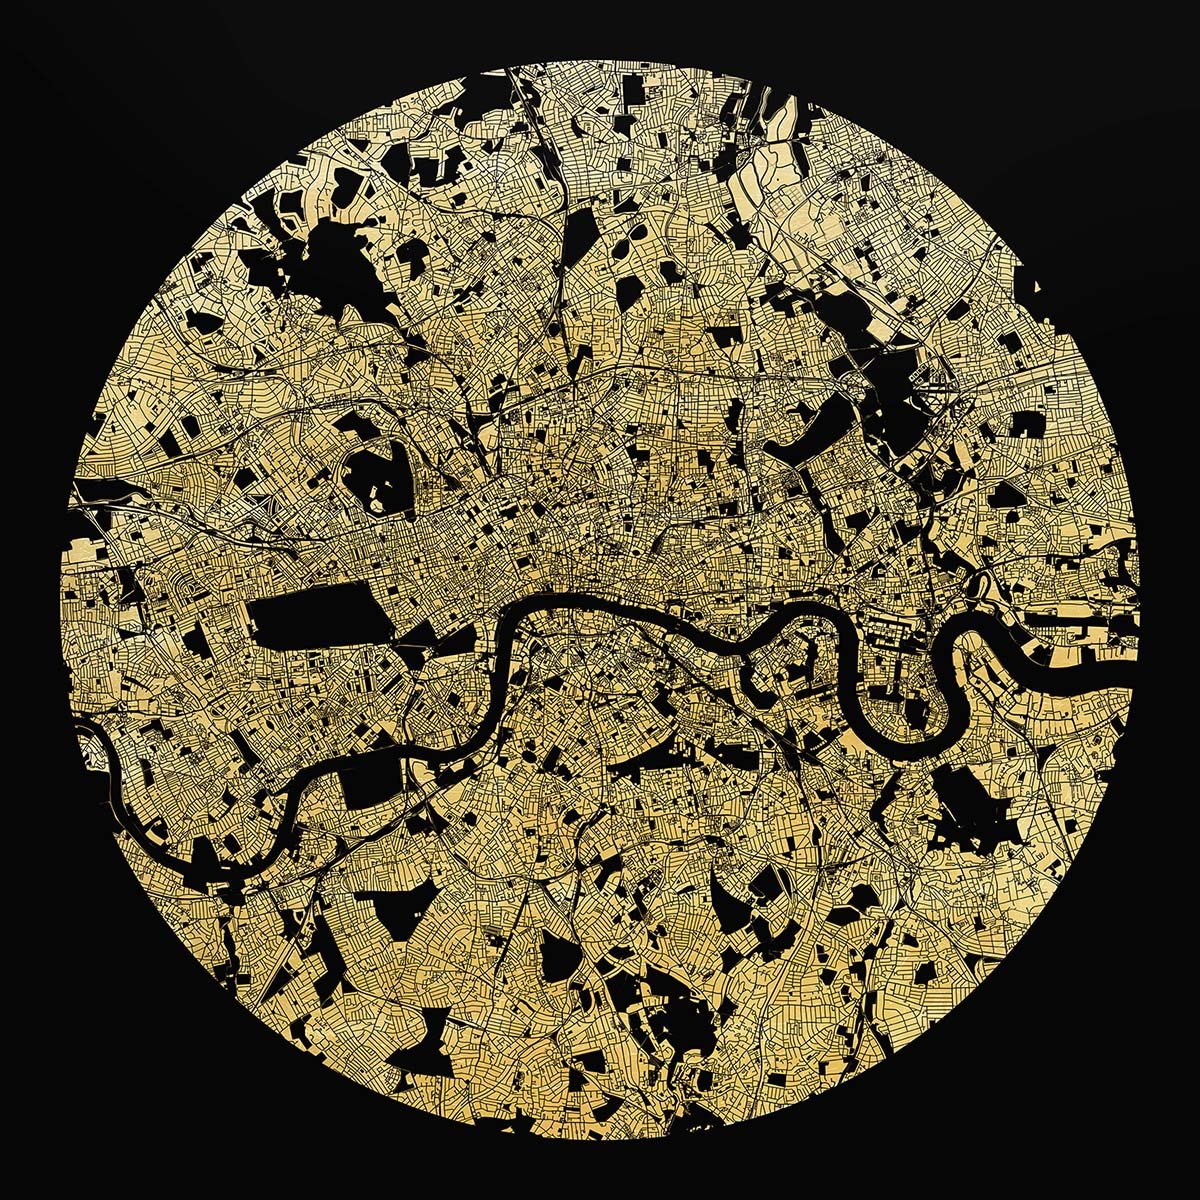 ewan-david-eason-Mappa-Mundi-london-3.jpg